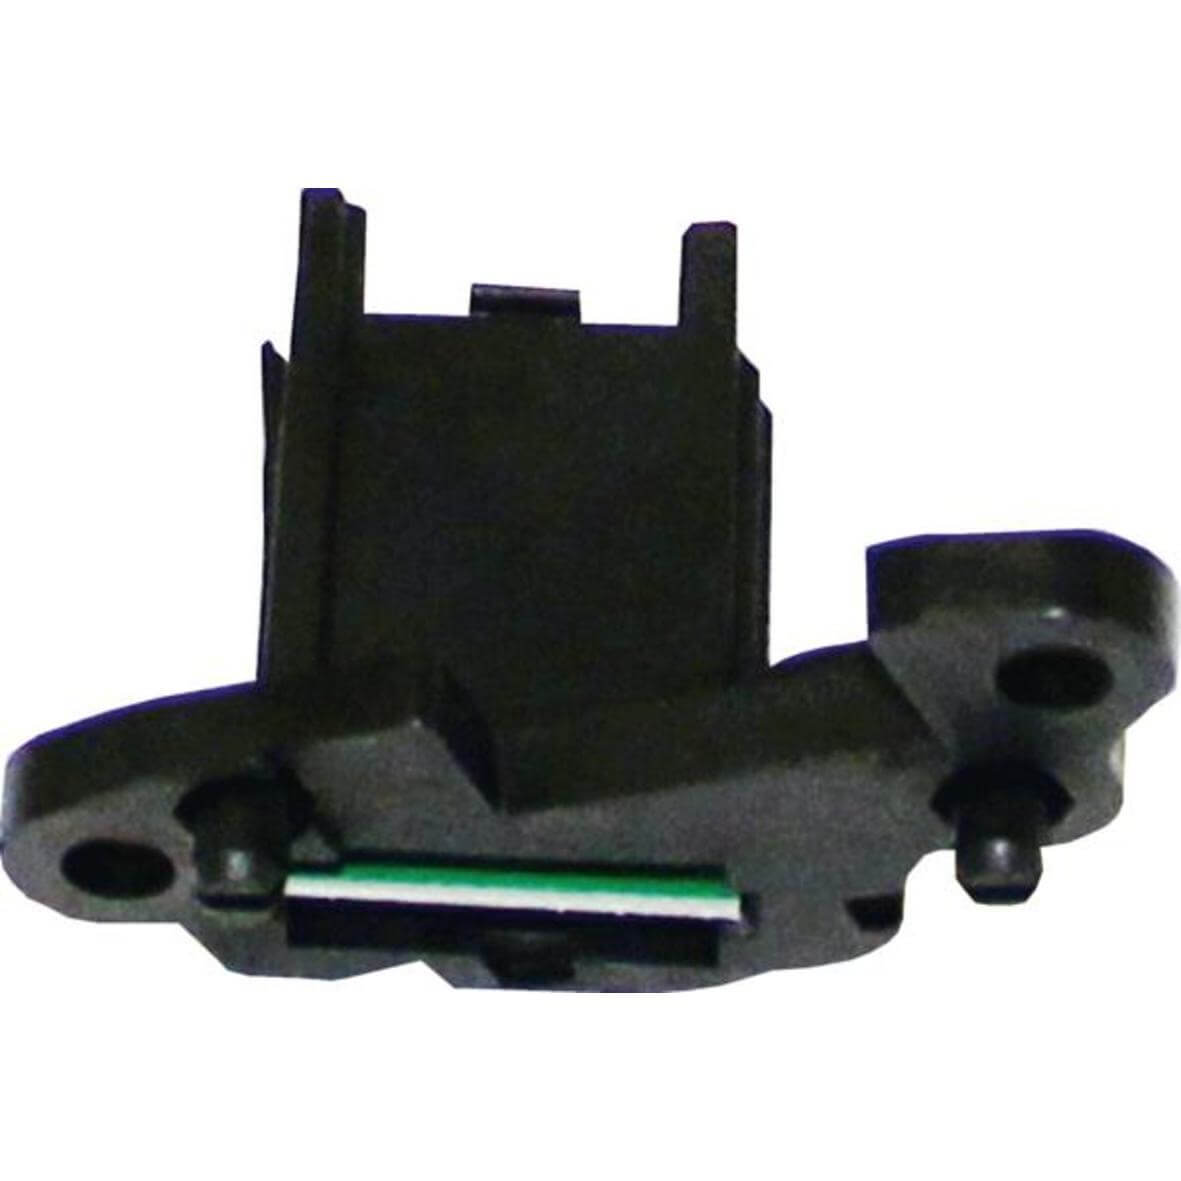 Sensor 3G-Sensor für BLDC lackierte Platine und Gehäuse UL (KD-10000839) von BSH